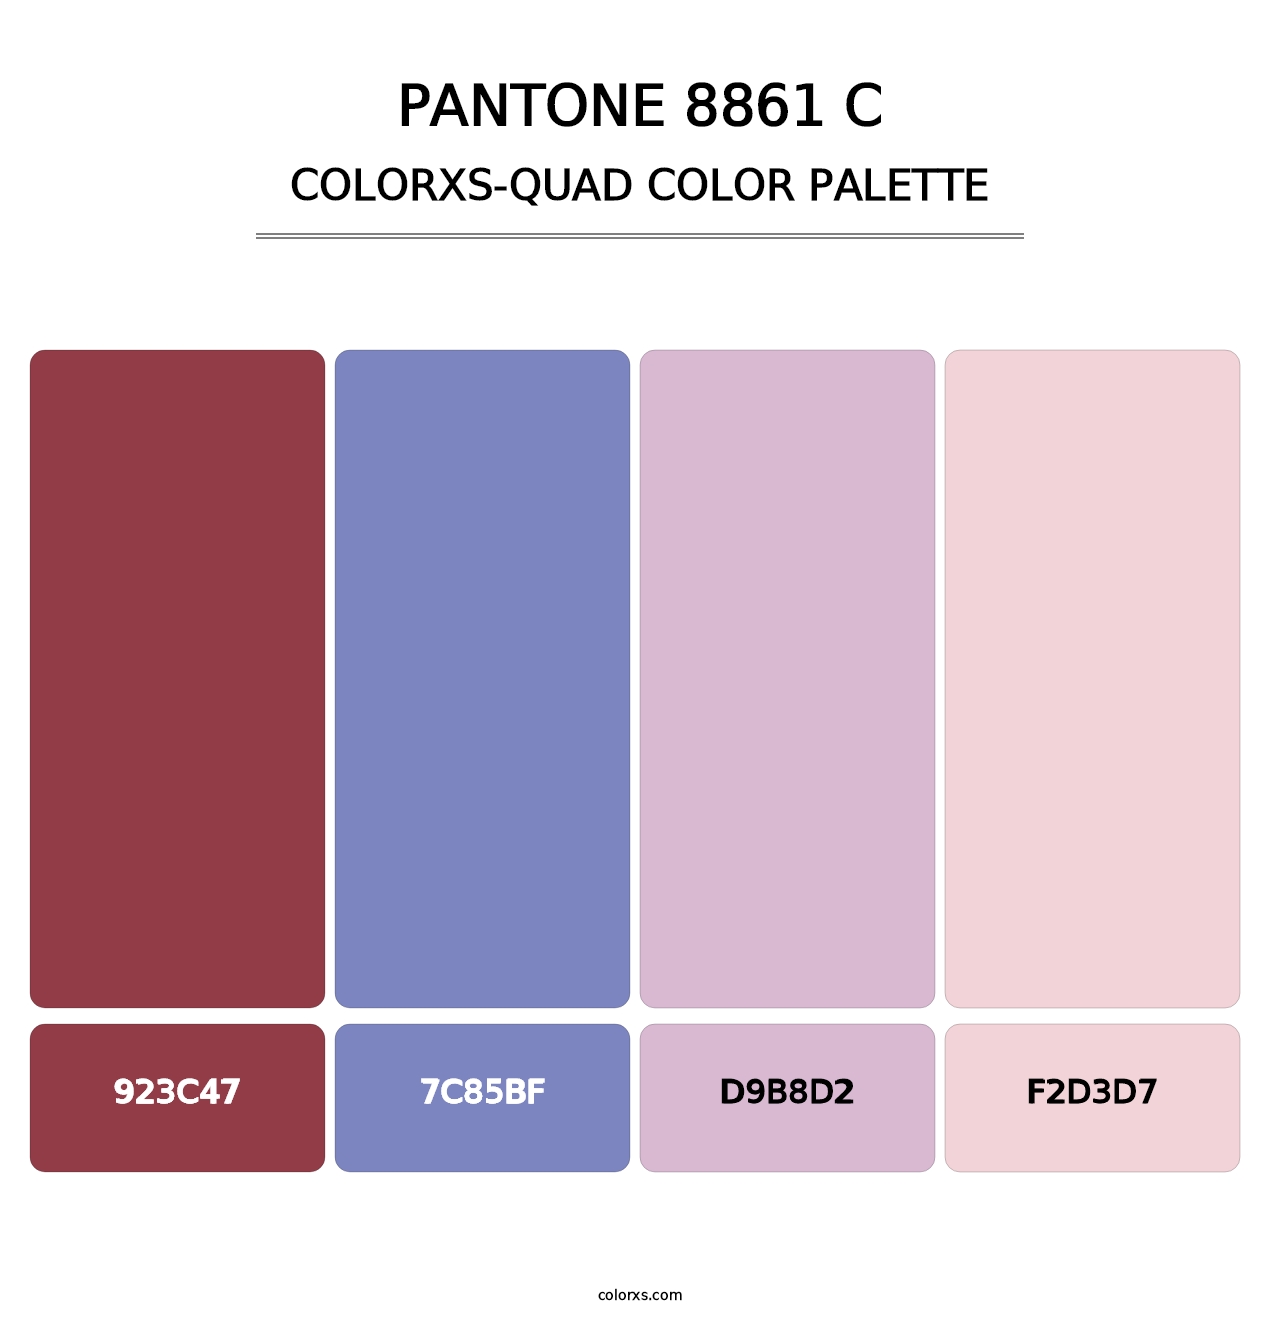 PANTONE 8861 C - Colorxs Quad Palette